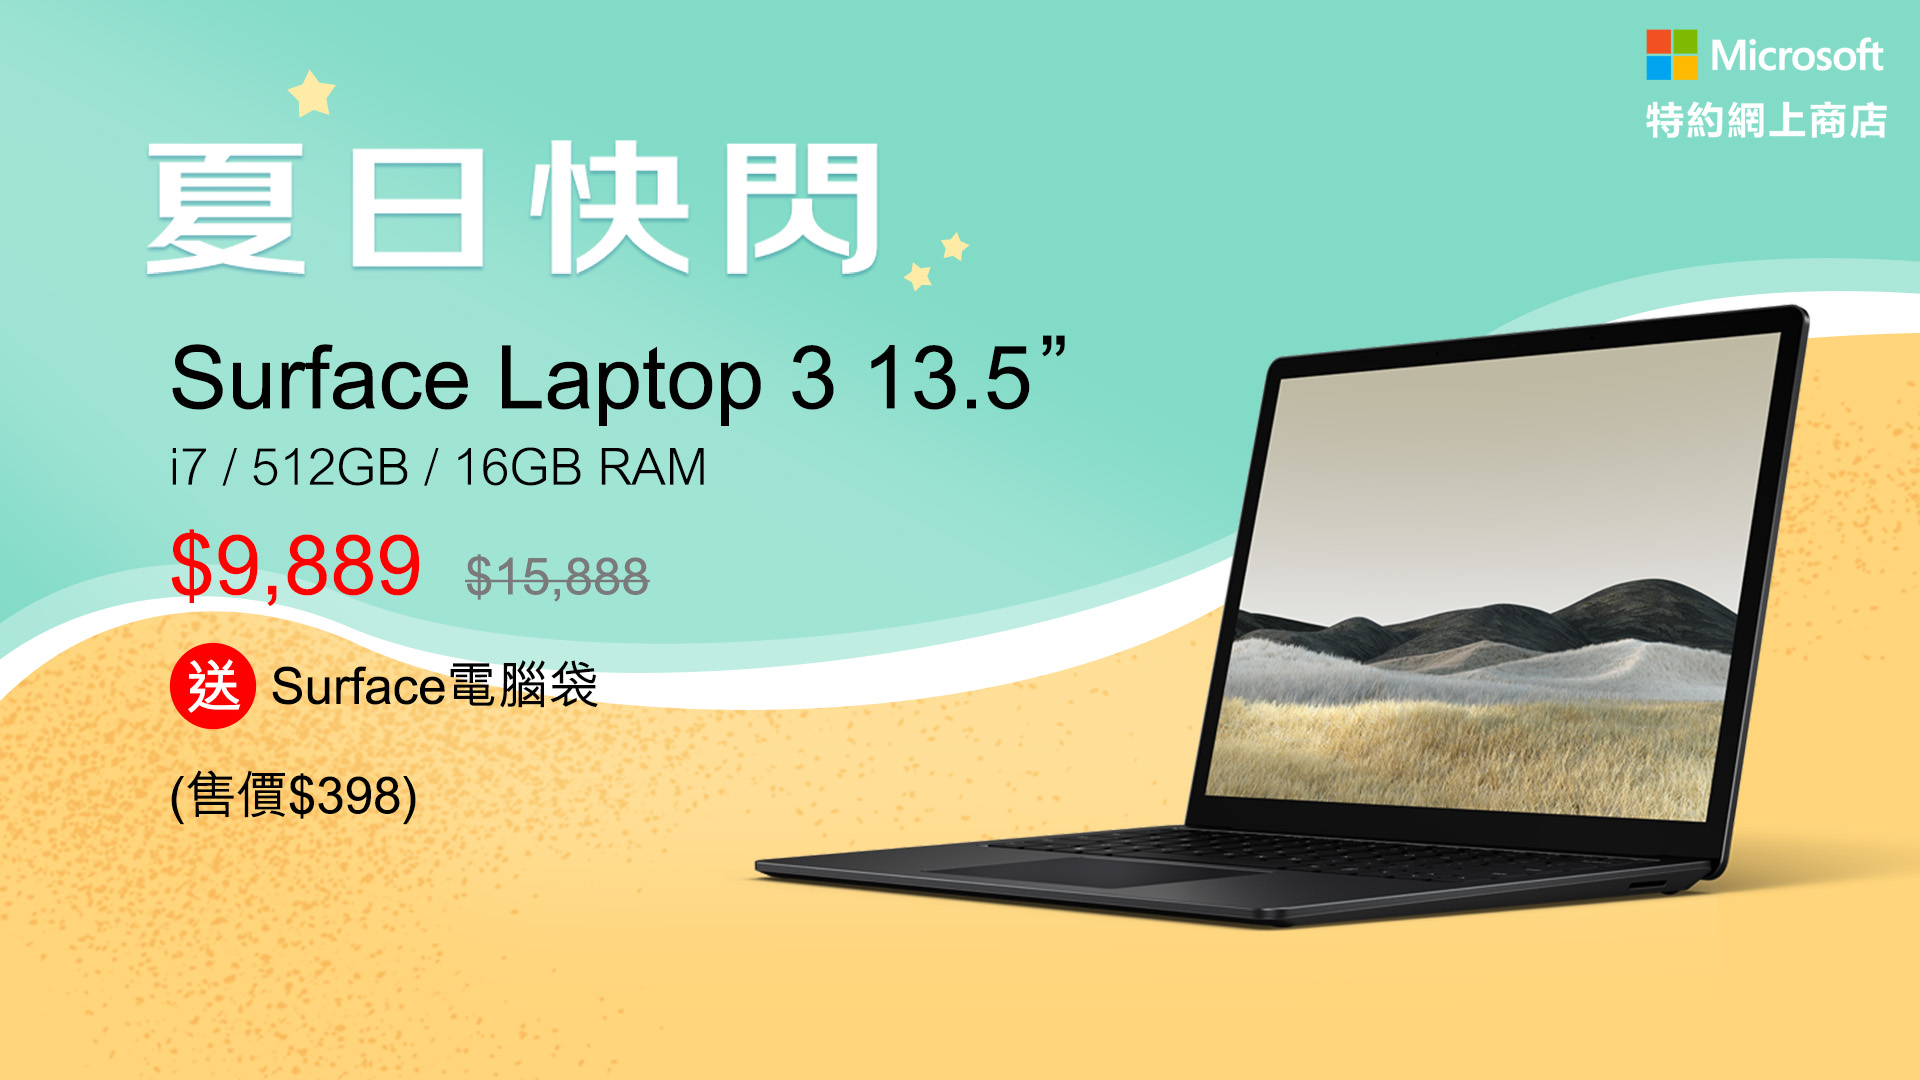 Microsoft Surface Laptop 3 saves HK$6,000